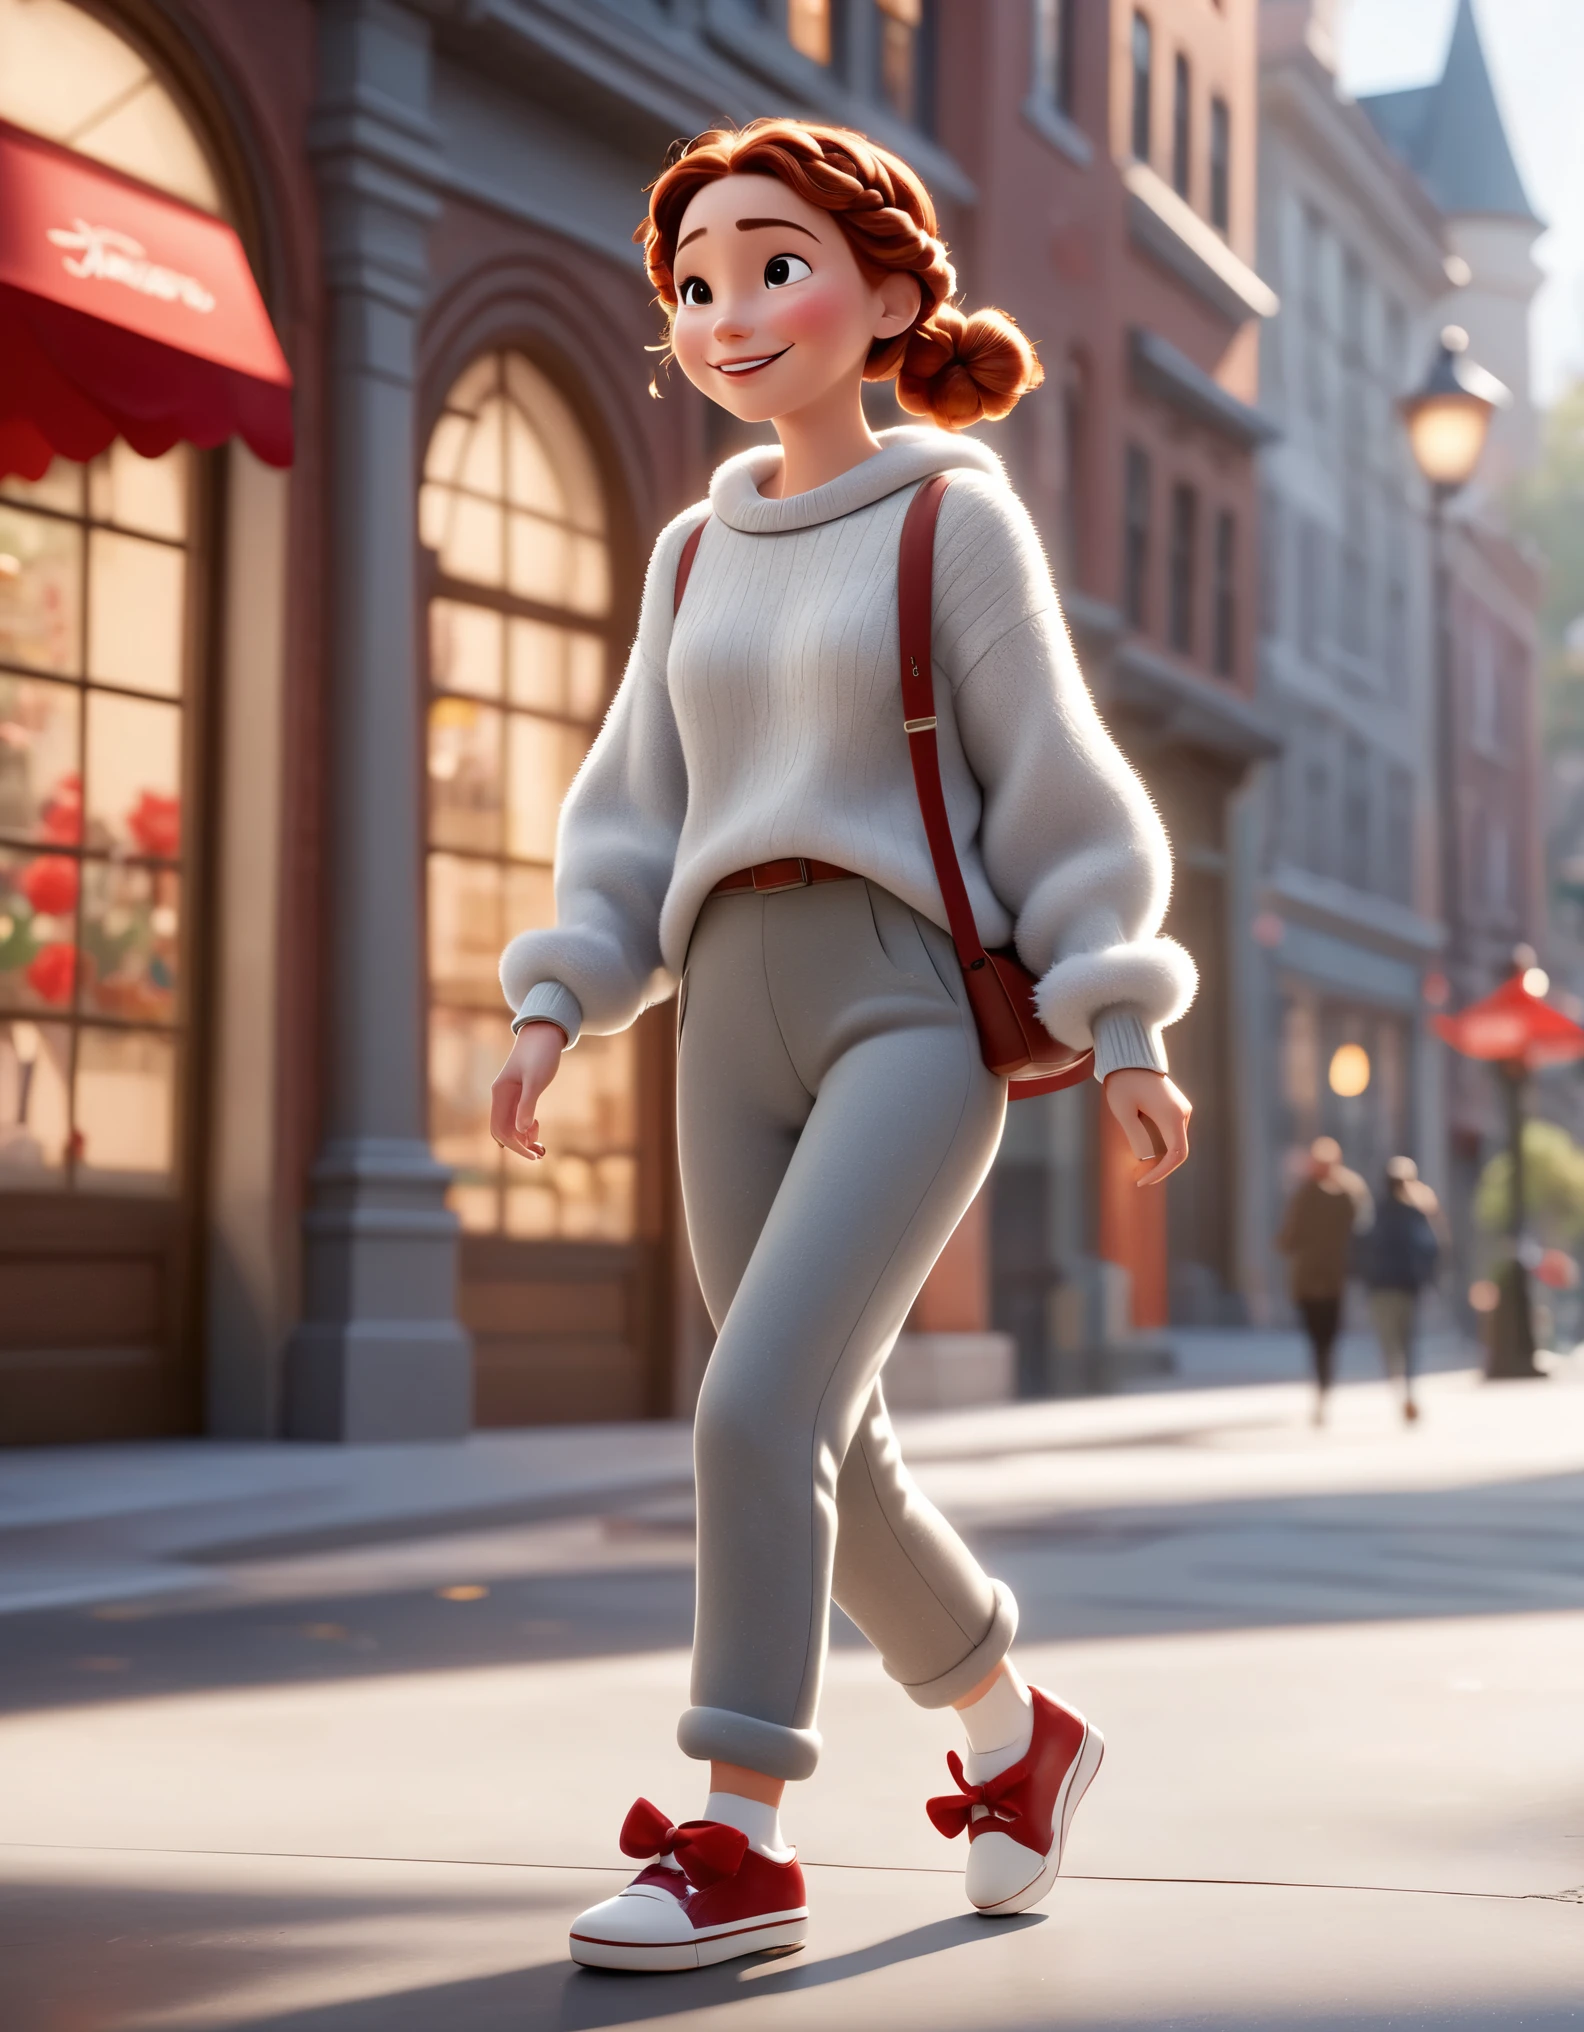 디즈니 애니메이션의 3D 캐릭터, 픽사 스타일,전신，과장된 보폭으로 행복하게 걷기，회색의 부드러운 스웨터와 털이 많은 슬랙스，붉은 활，머리띠로，하얀 신발，깨끗한 배경.계피 조명, 광선 추적, 높은 세부 사항, 3D 렌더링 ，배경 비네트